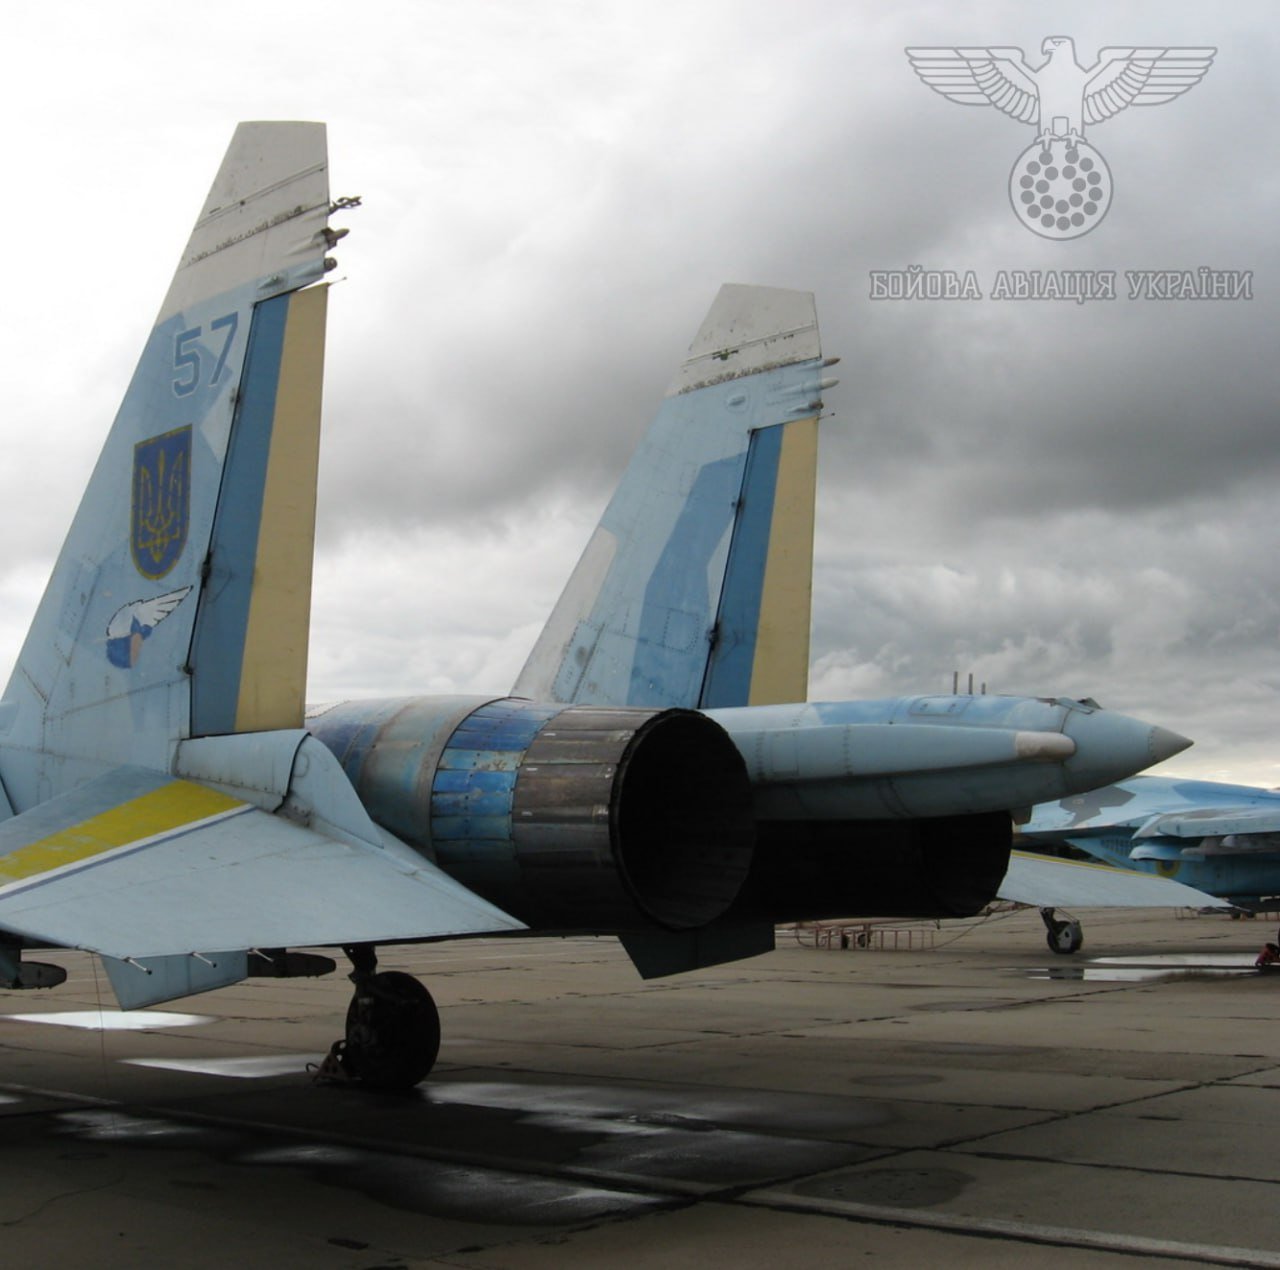 Україна починає переговори щодо відновлення авіаперевезень